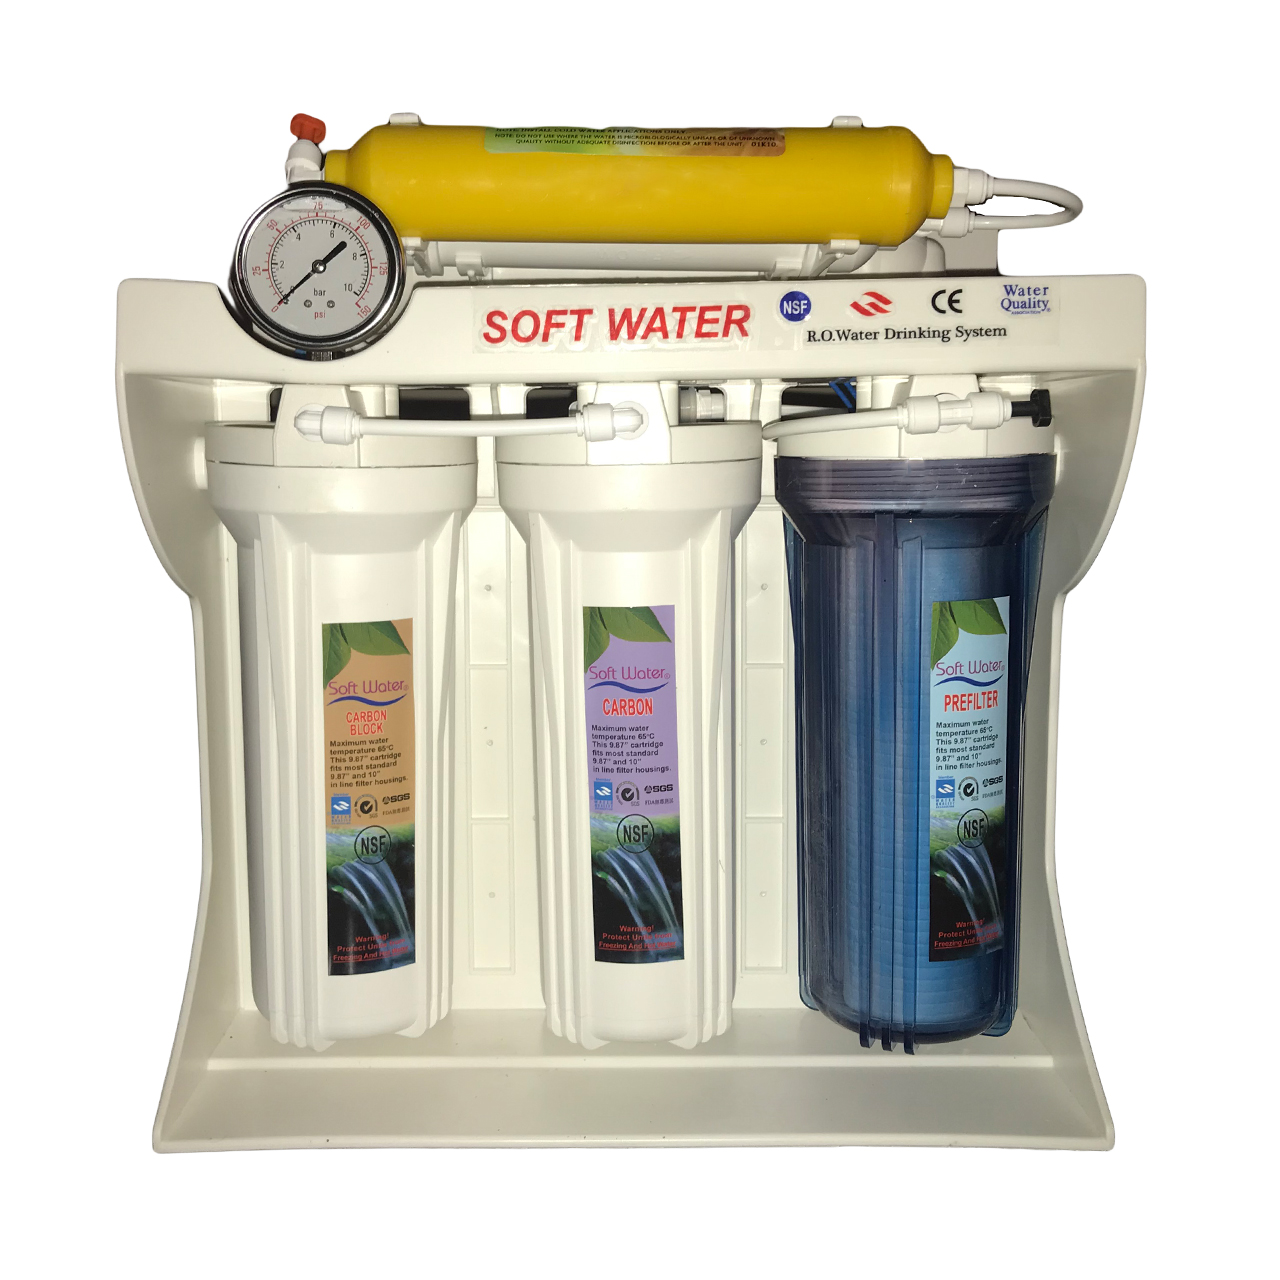 دستگاه تصفیه کننده آب خانگی سافت واتر کد 05